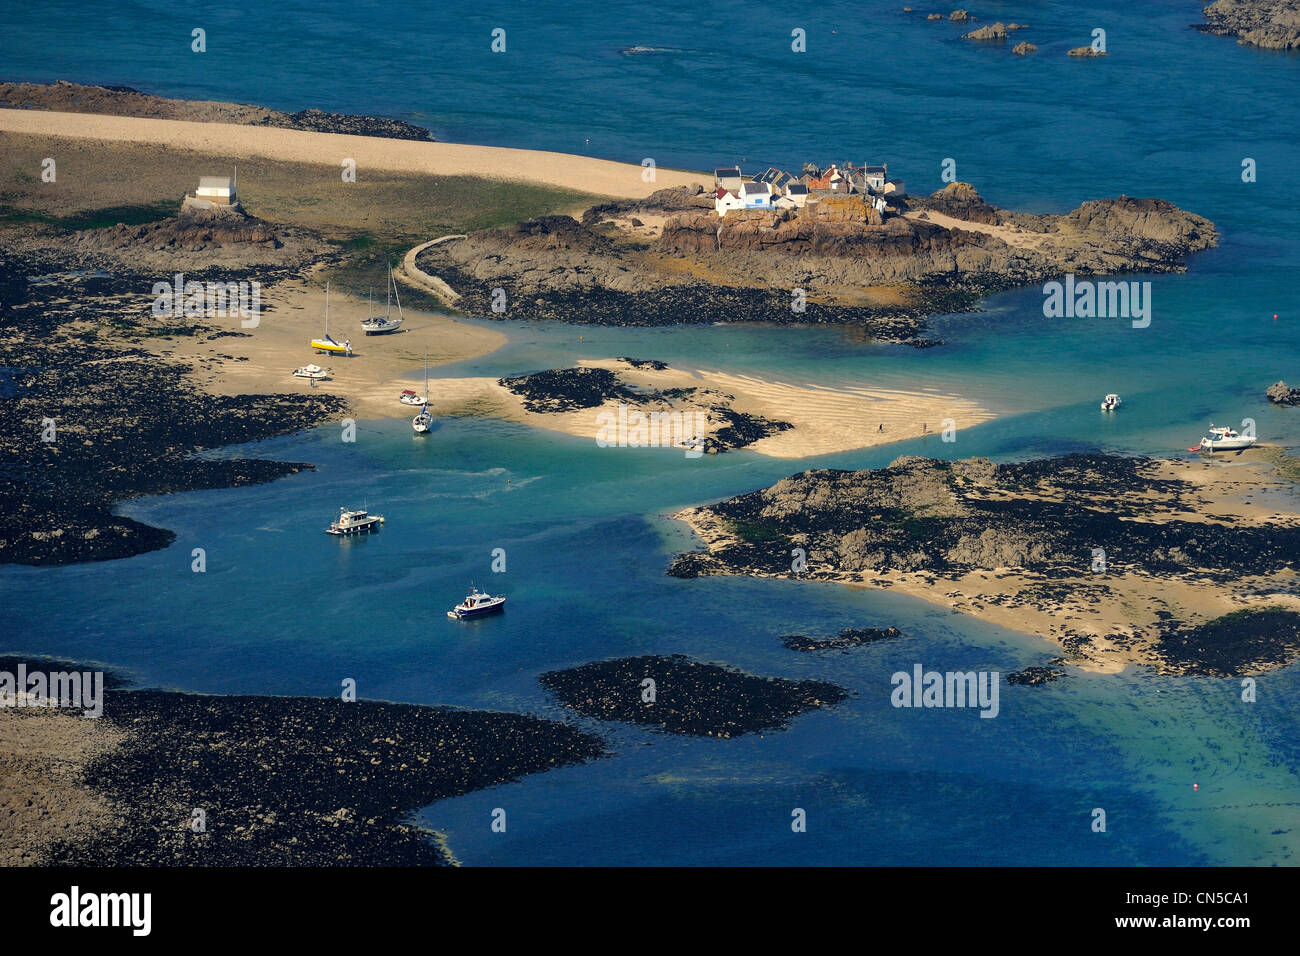 Reino Unido, Islas del Canal, Isla de Jersey, las islas Ecrehou en marea baja, casas de pescadores Foto de stock